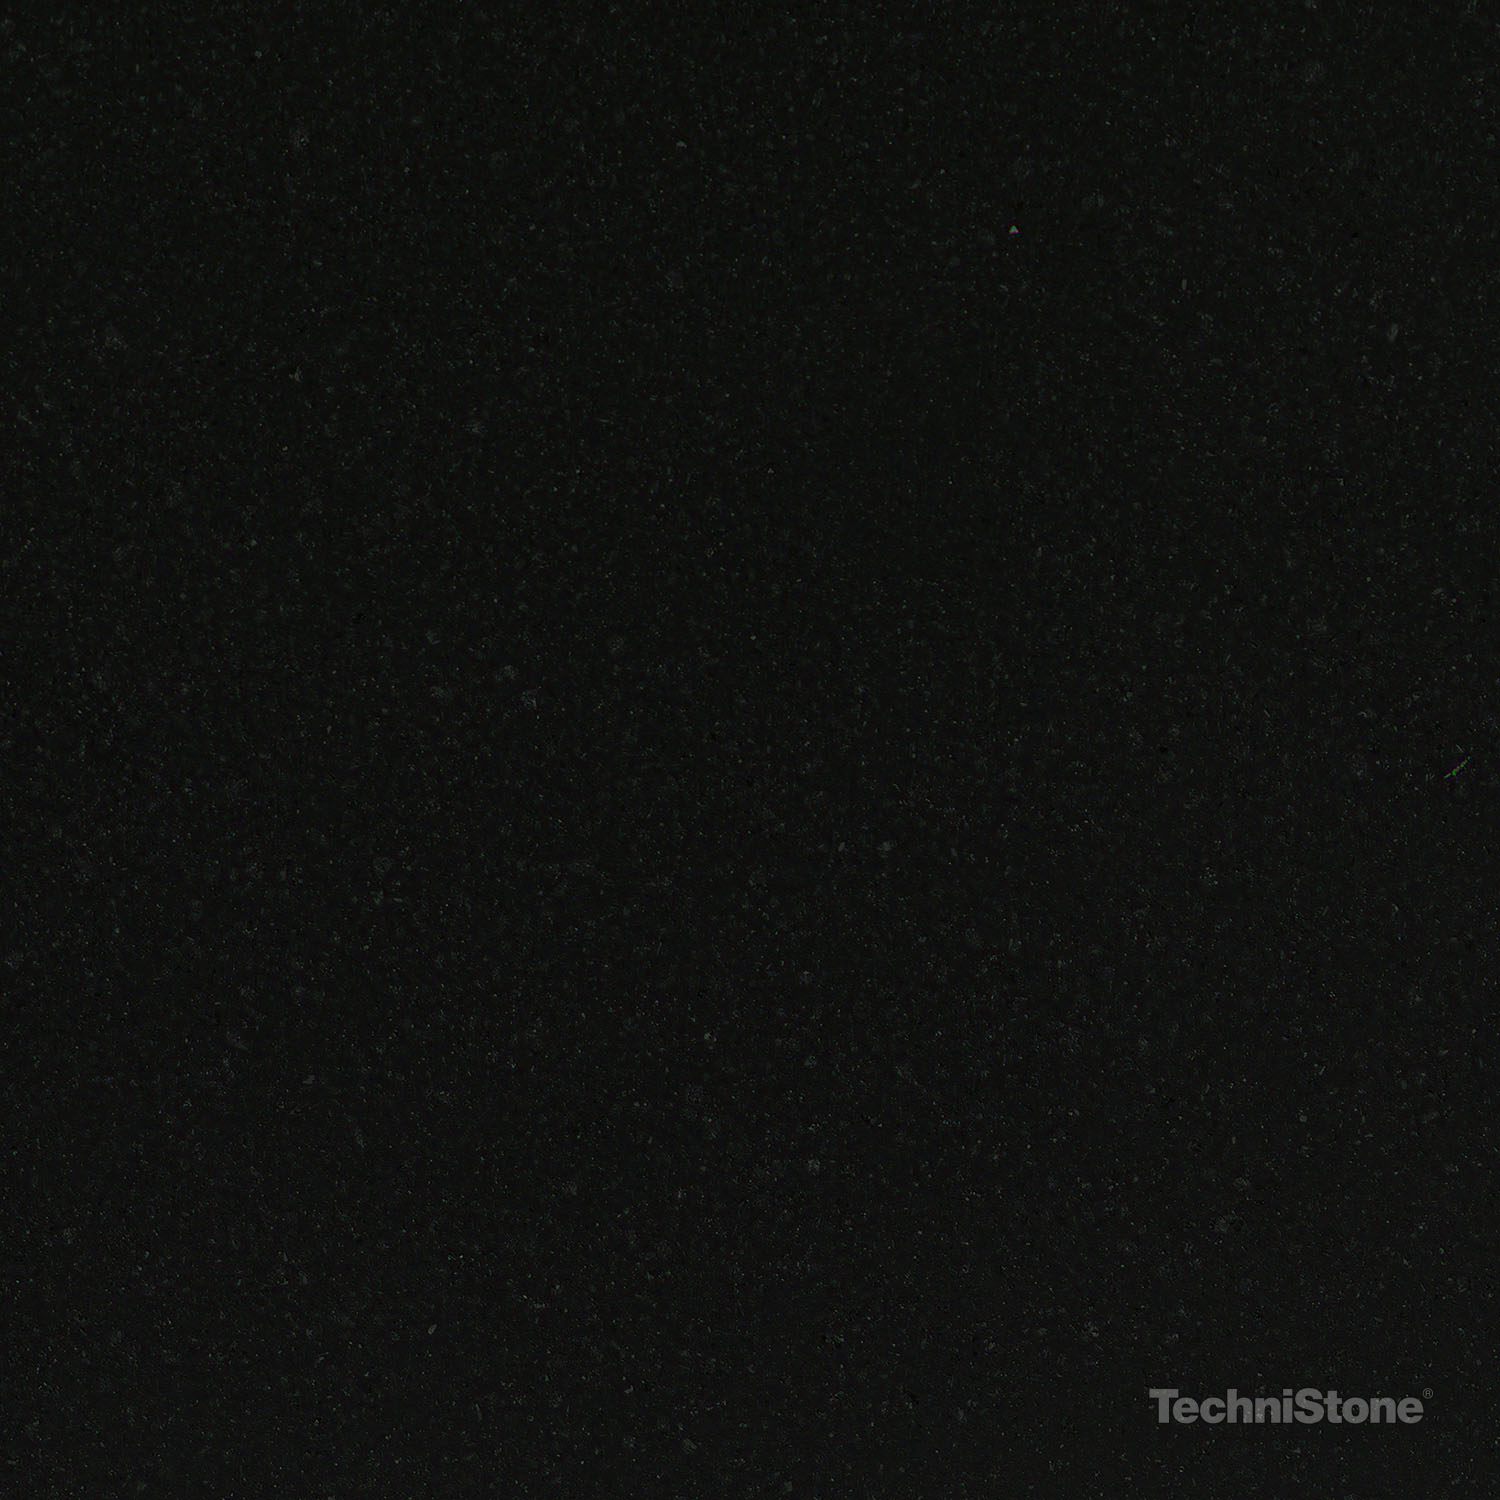 Technistone - Colectia Essential - Taurus-Black